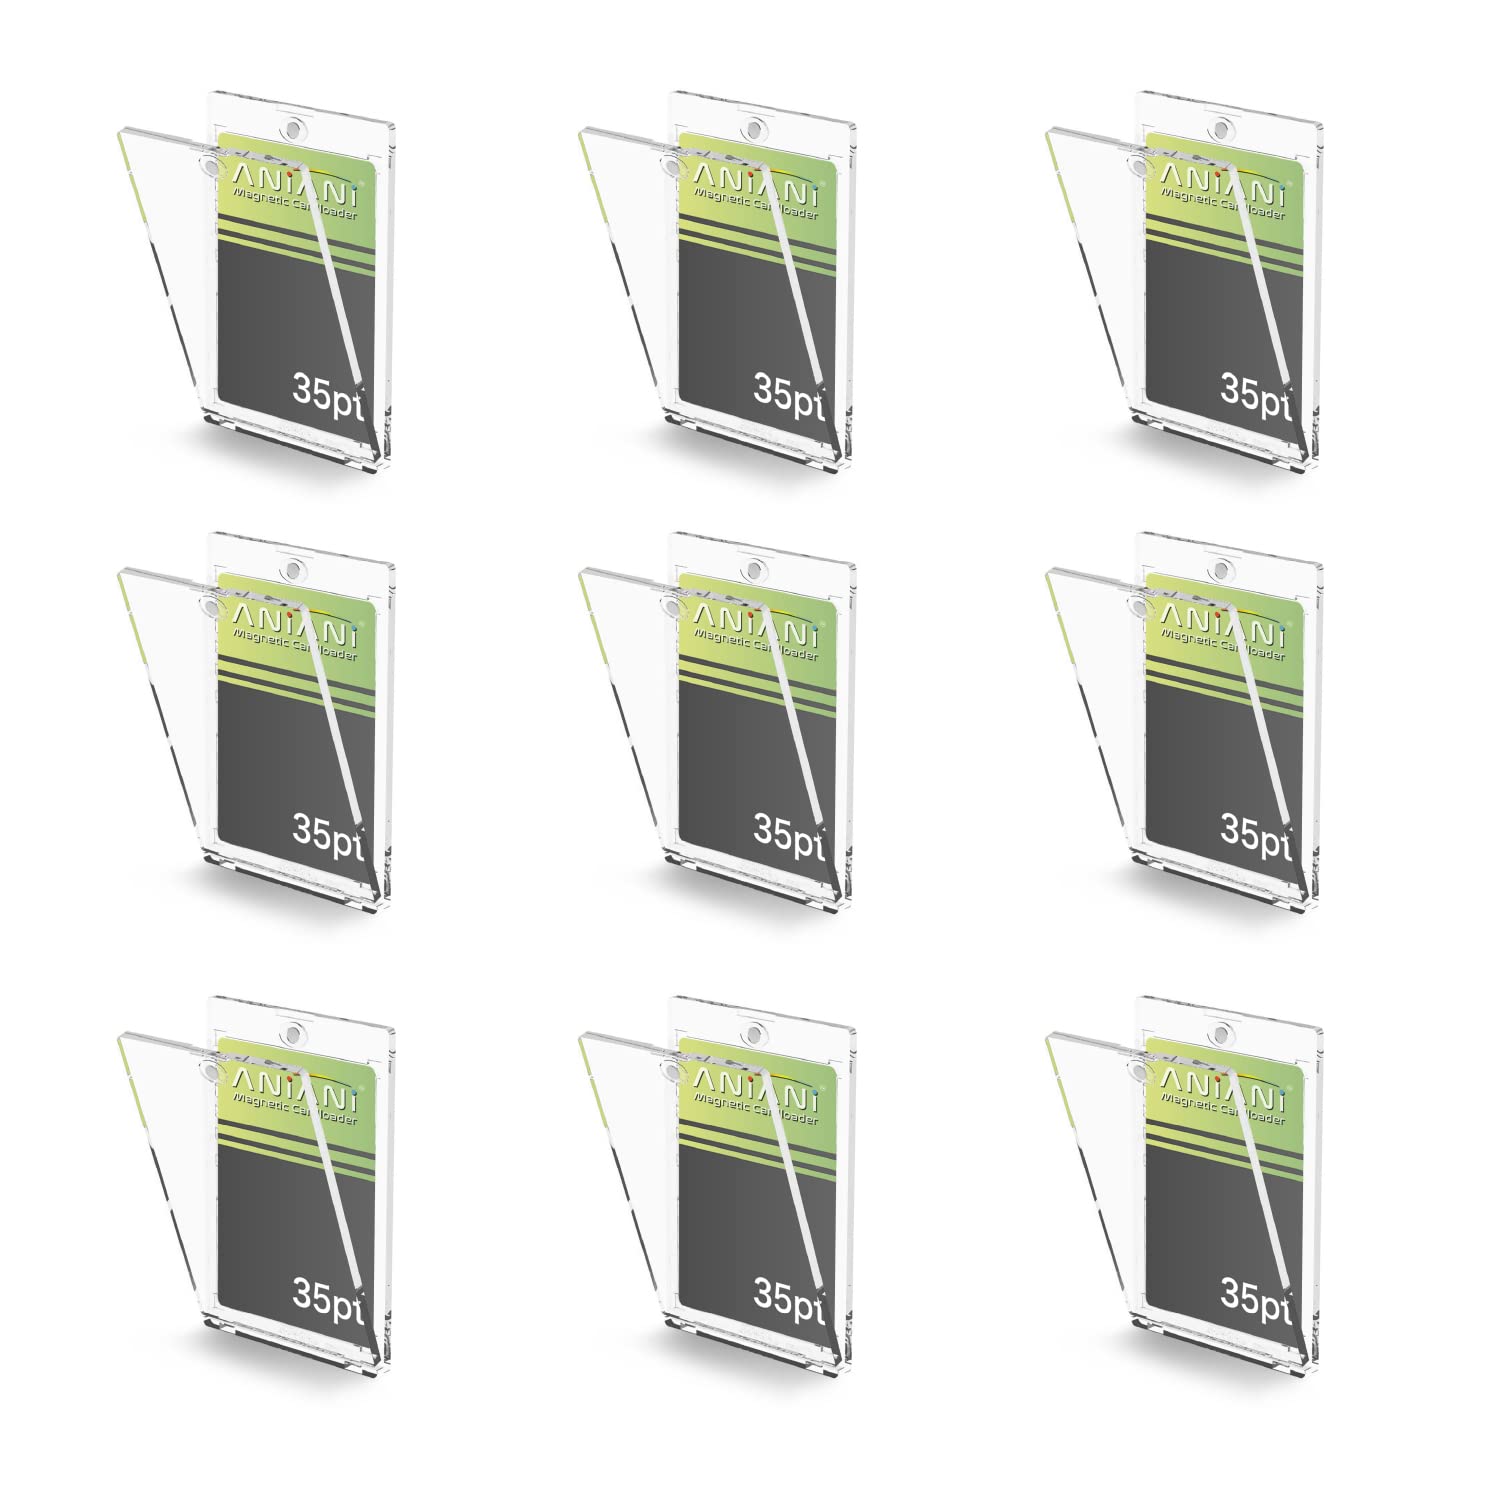 ANiANi マグネットローダー カードローダー (9個+専用スリーブセット) トレーディングカード 35pt カードケース UVカット カード保護 収納 トレカ保護ケース ポケカ コレクション